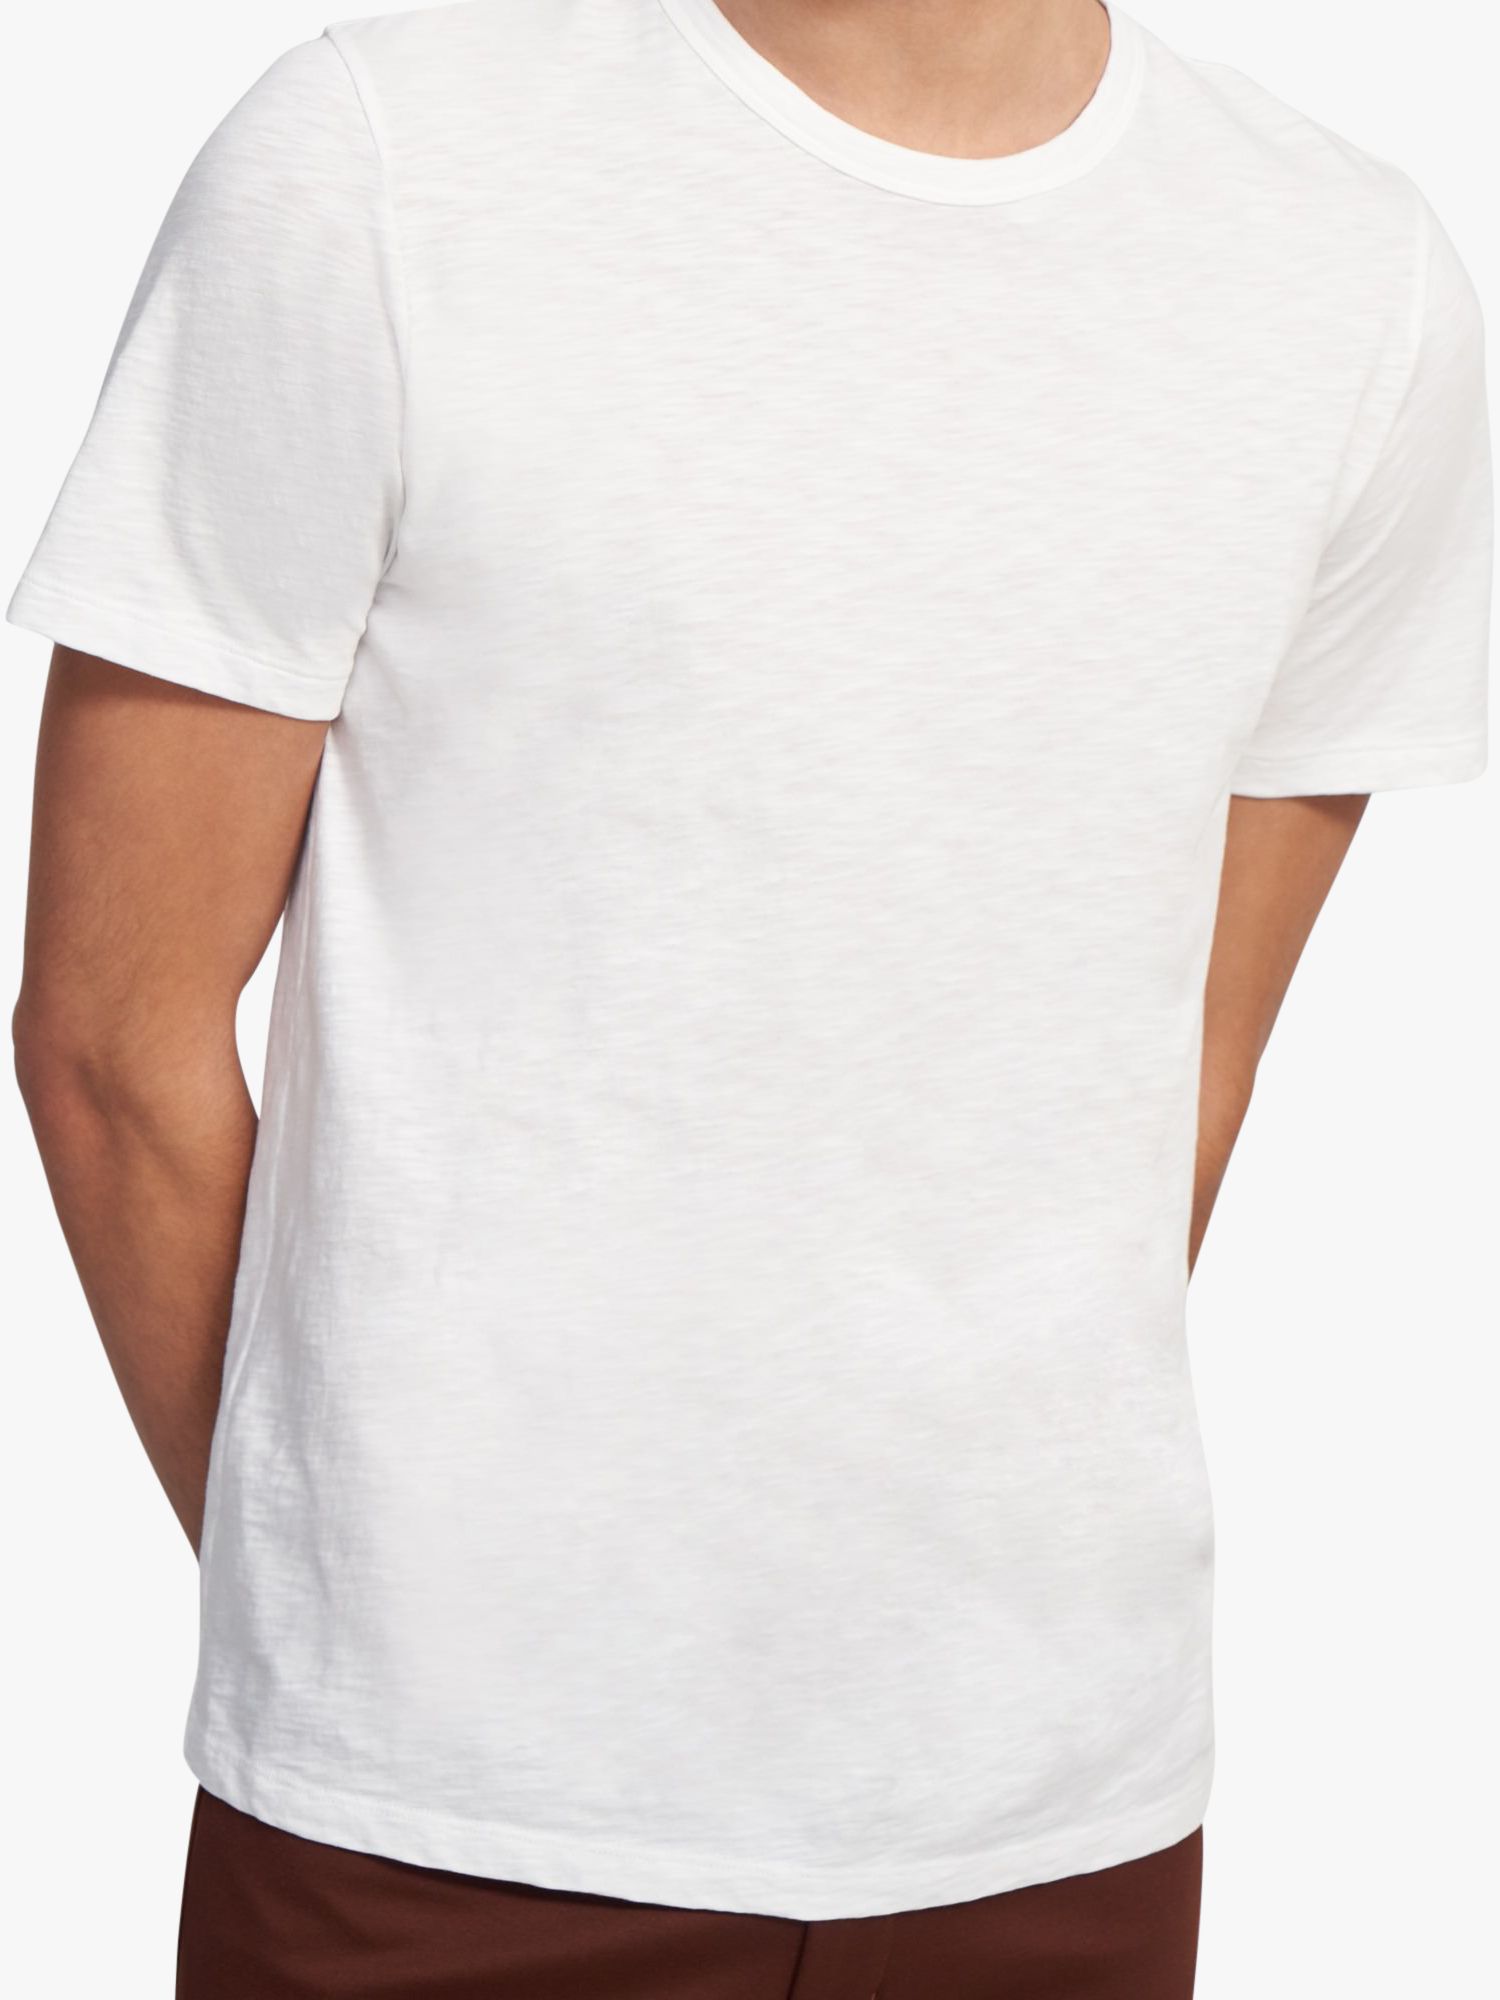 Theory Essential Cosmos Slub Cotton T-Shirt, White - 100, S